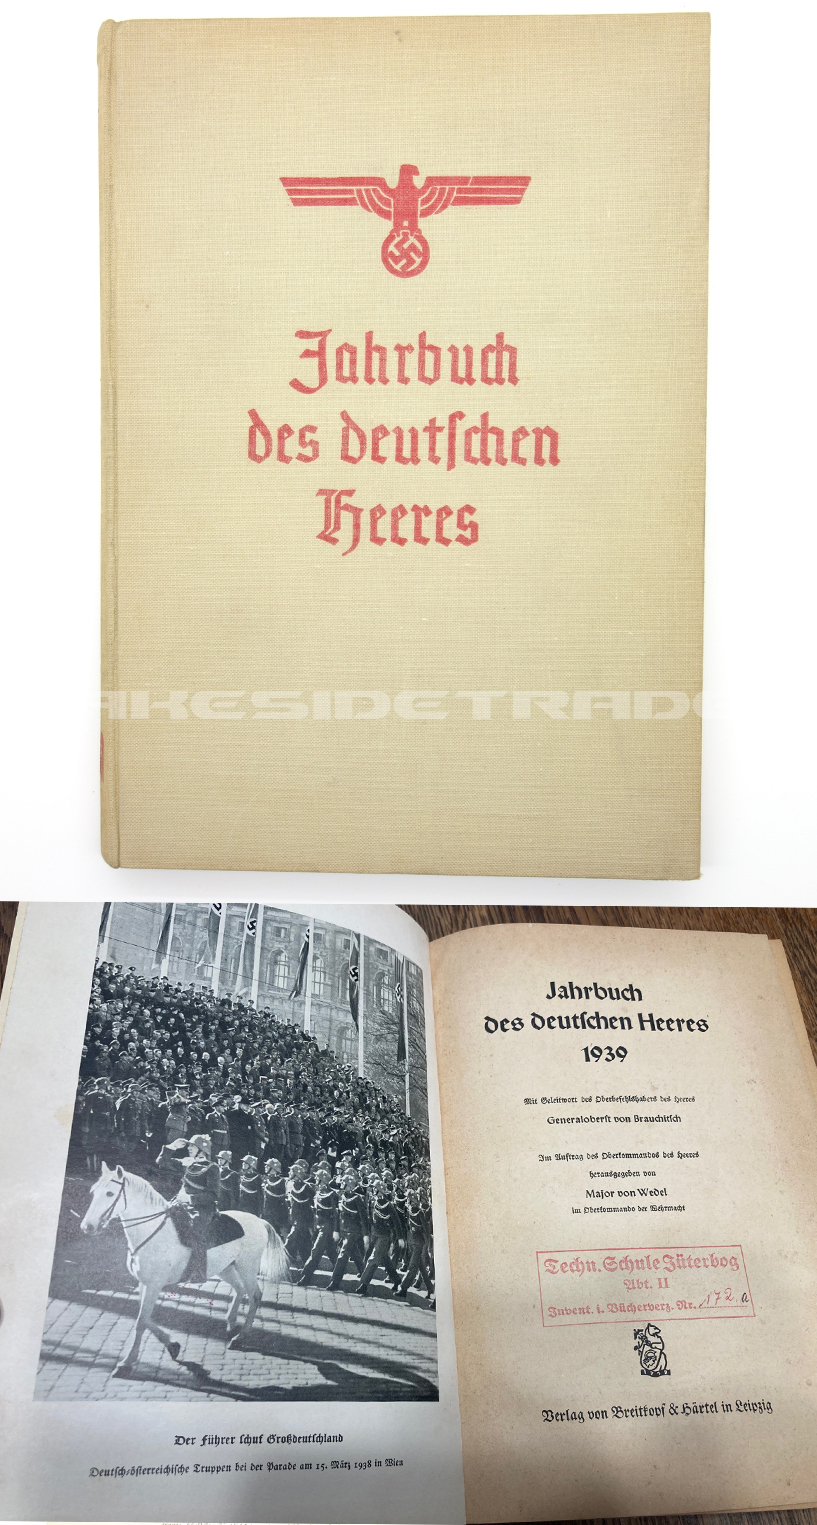 Jahrbuch der Deutschen Heeres - 1939